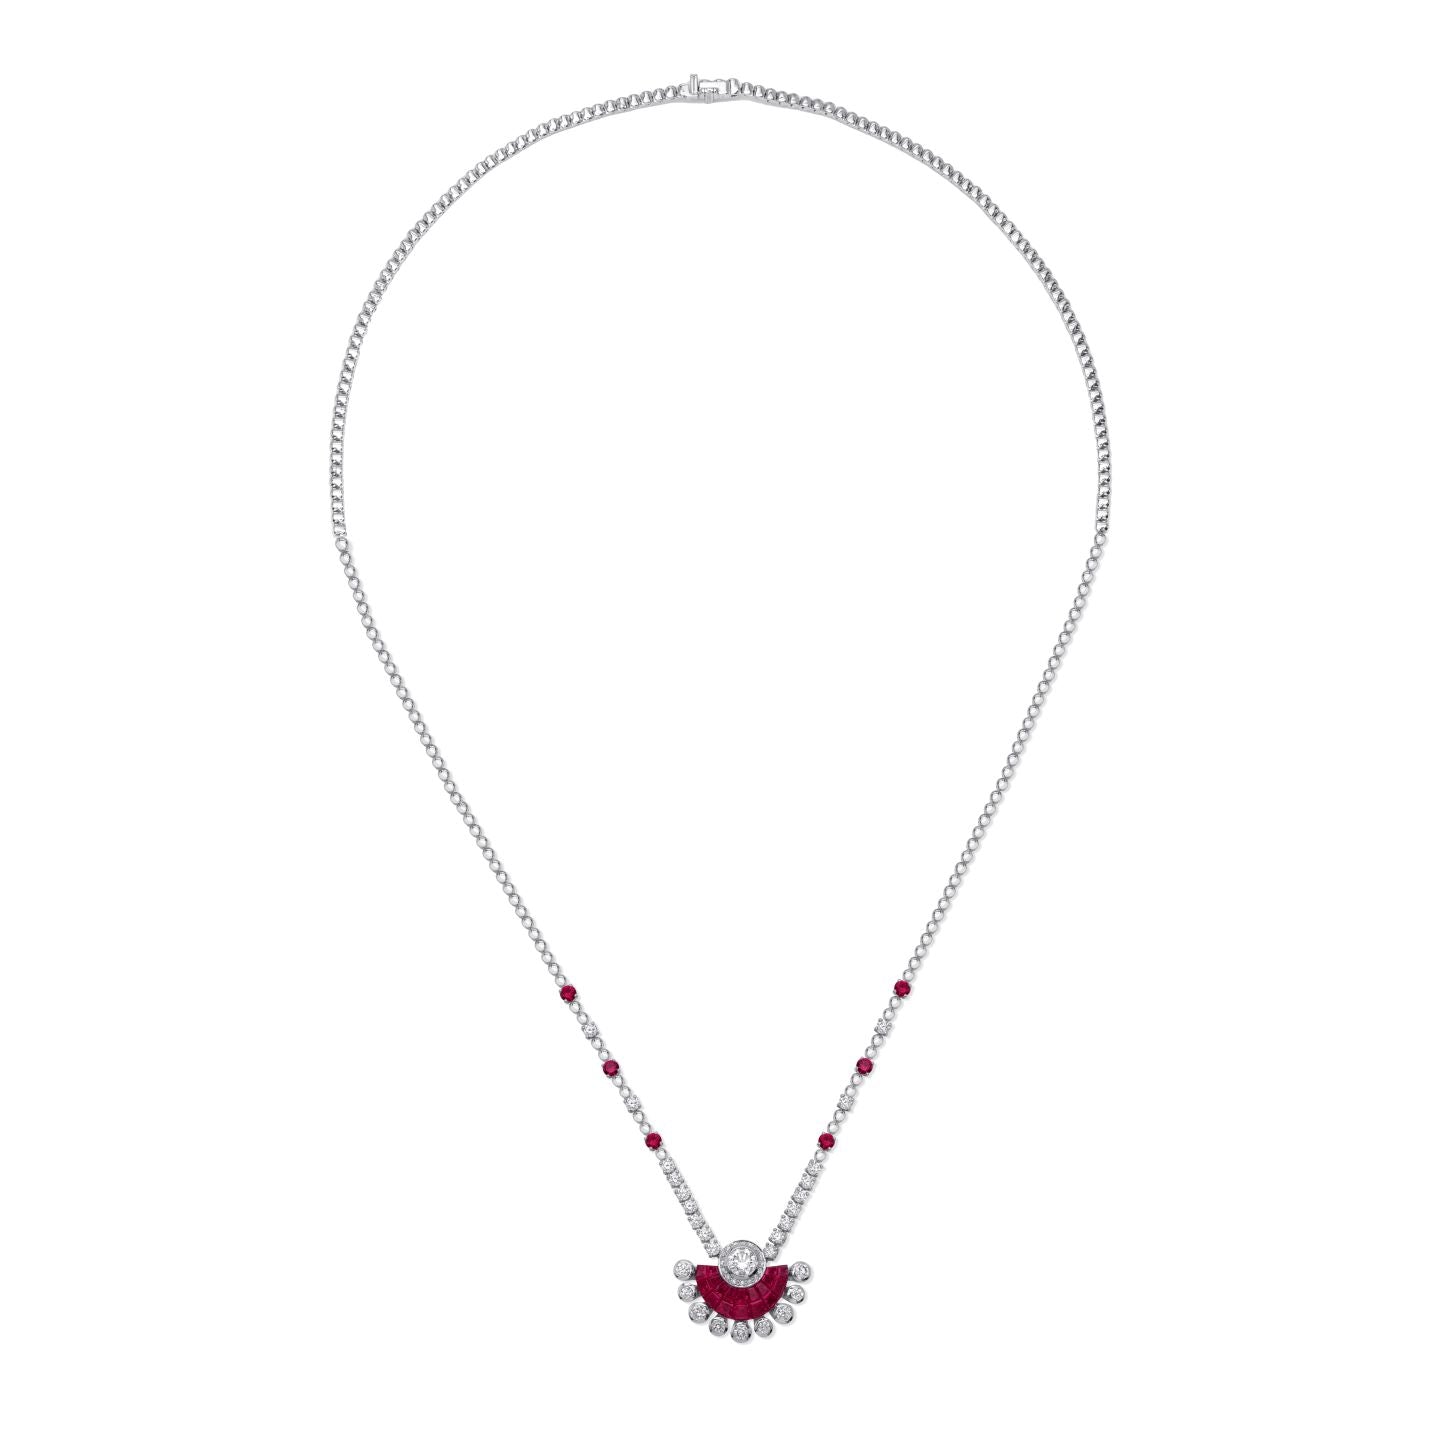 TWILIGHT Sunset Ruby Necklace